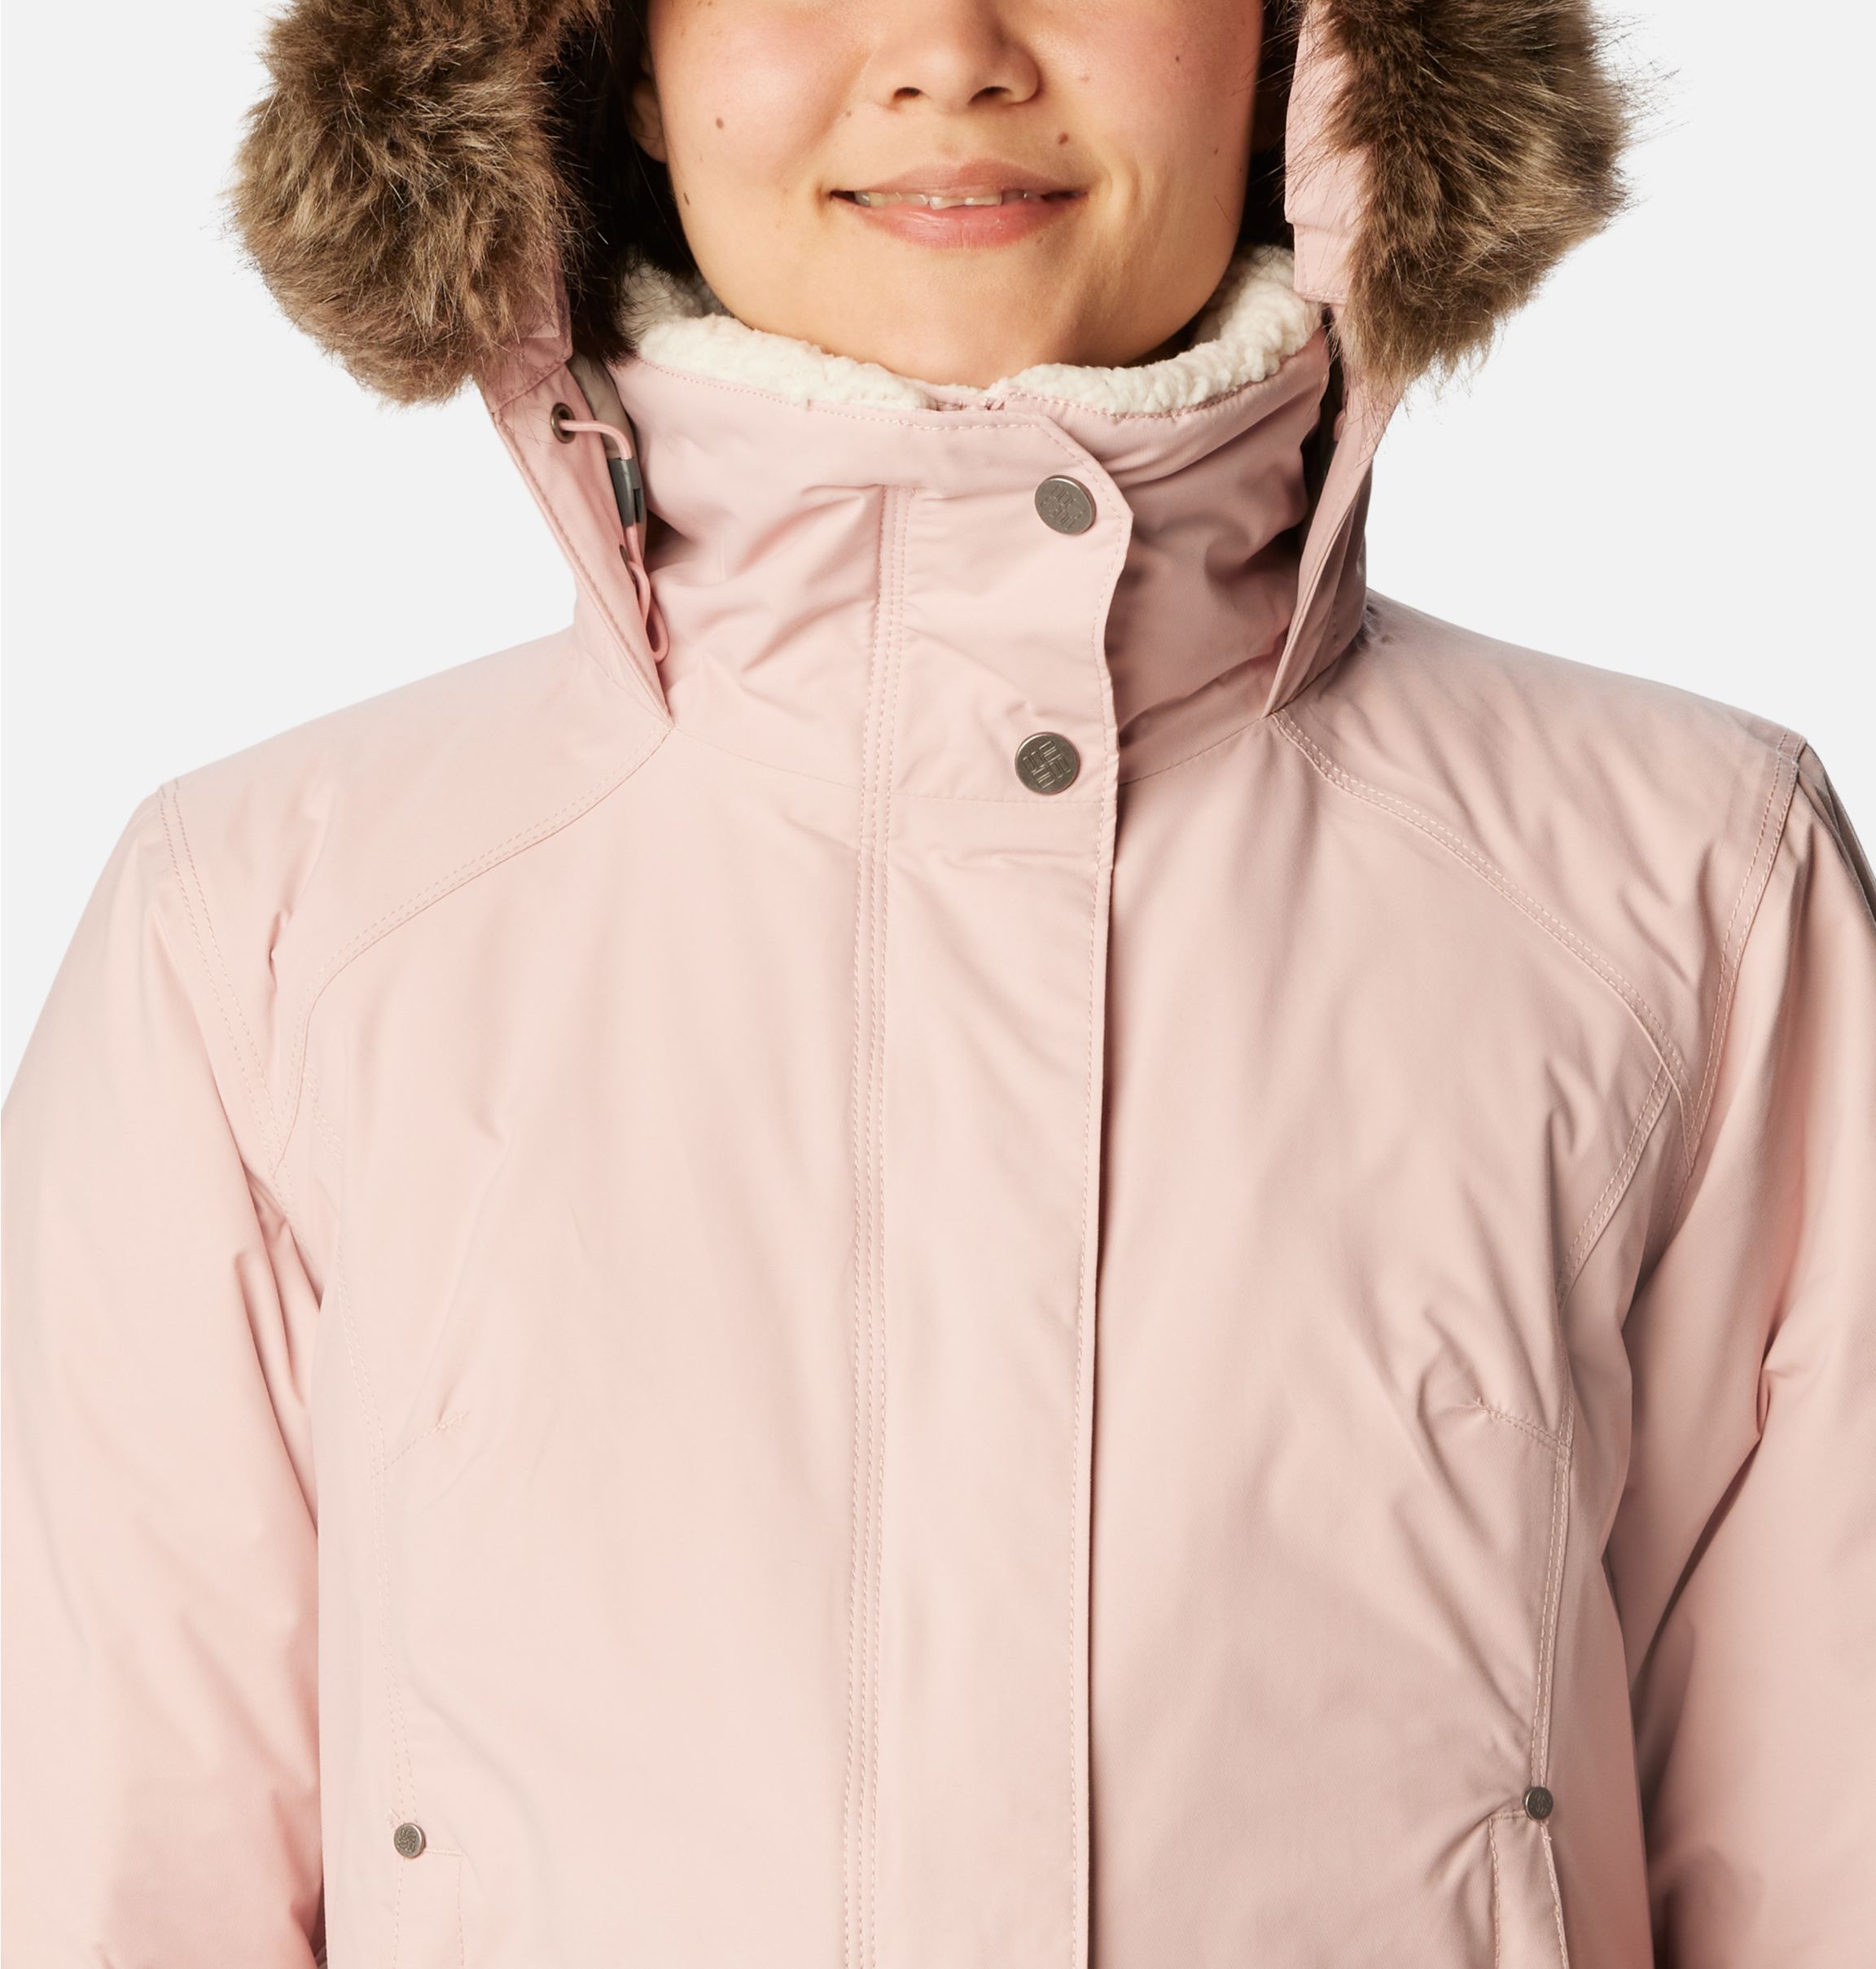 Women's Icelandite™ TurboDown Jacket